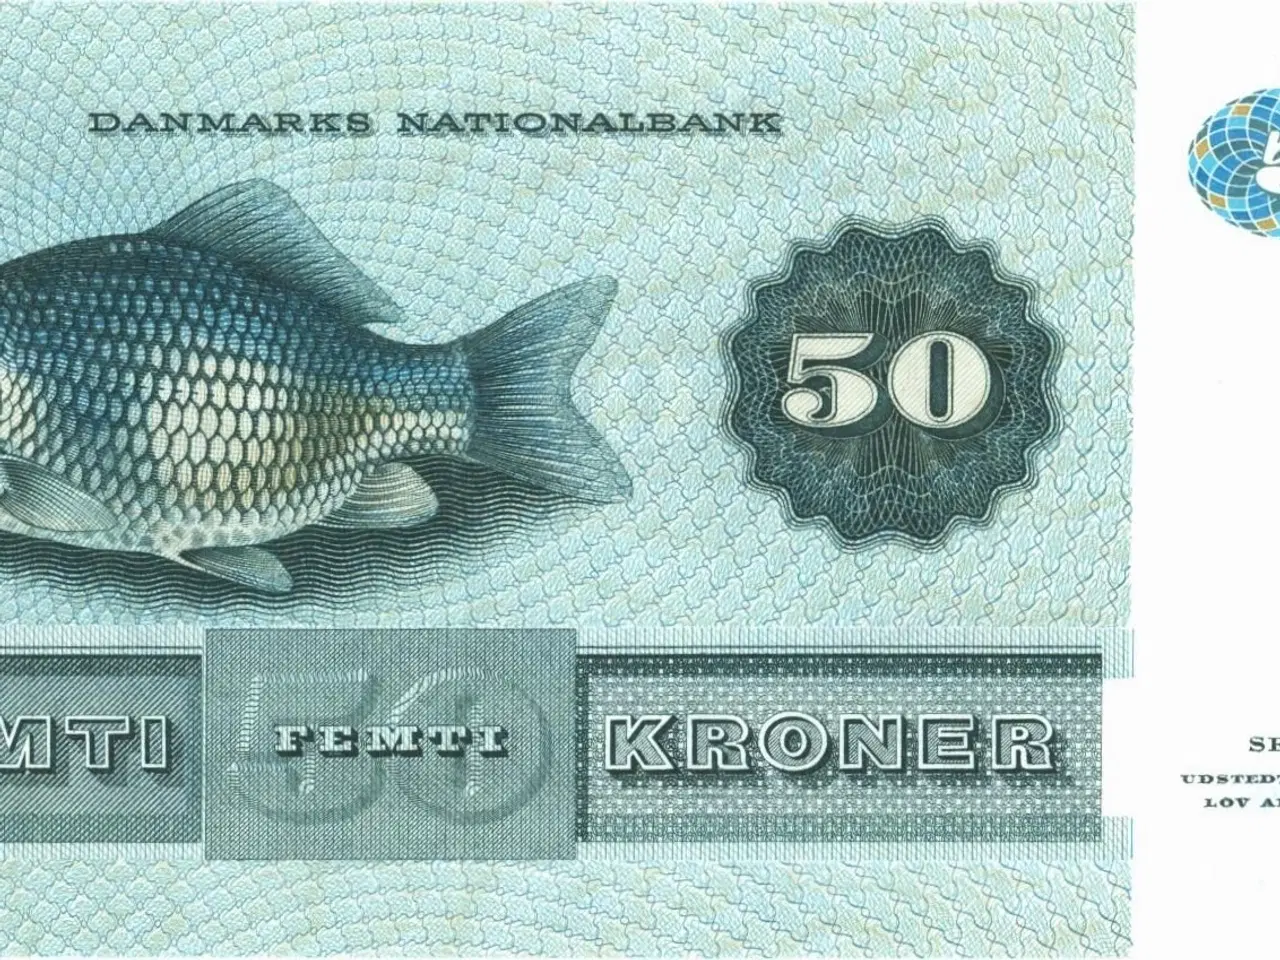 Billede 2 - DK. 50 kr. seddel fra 1985